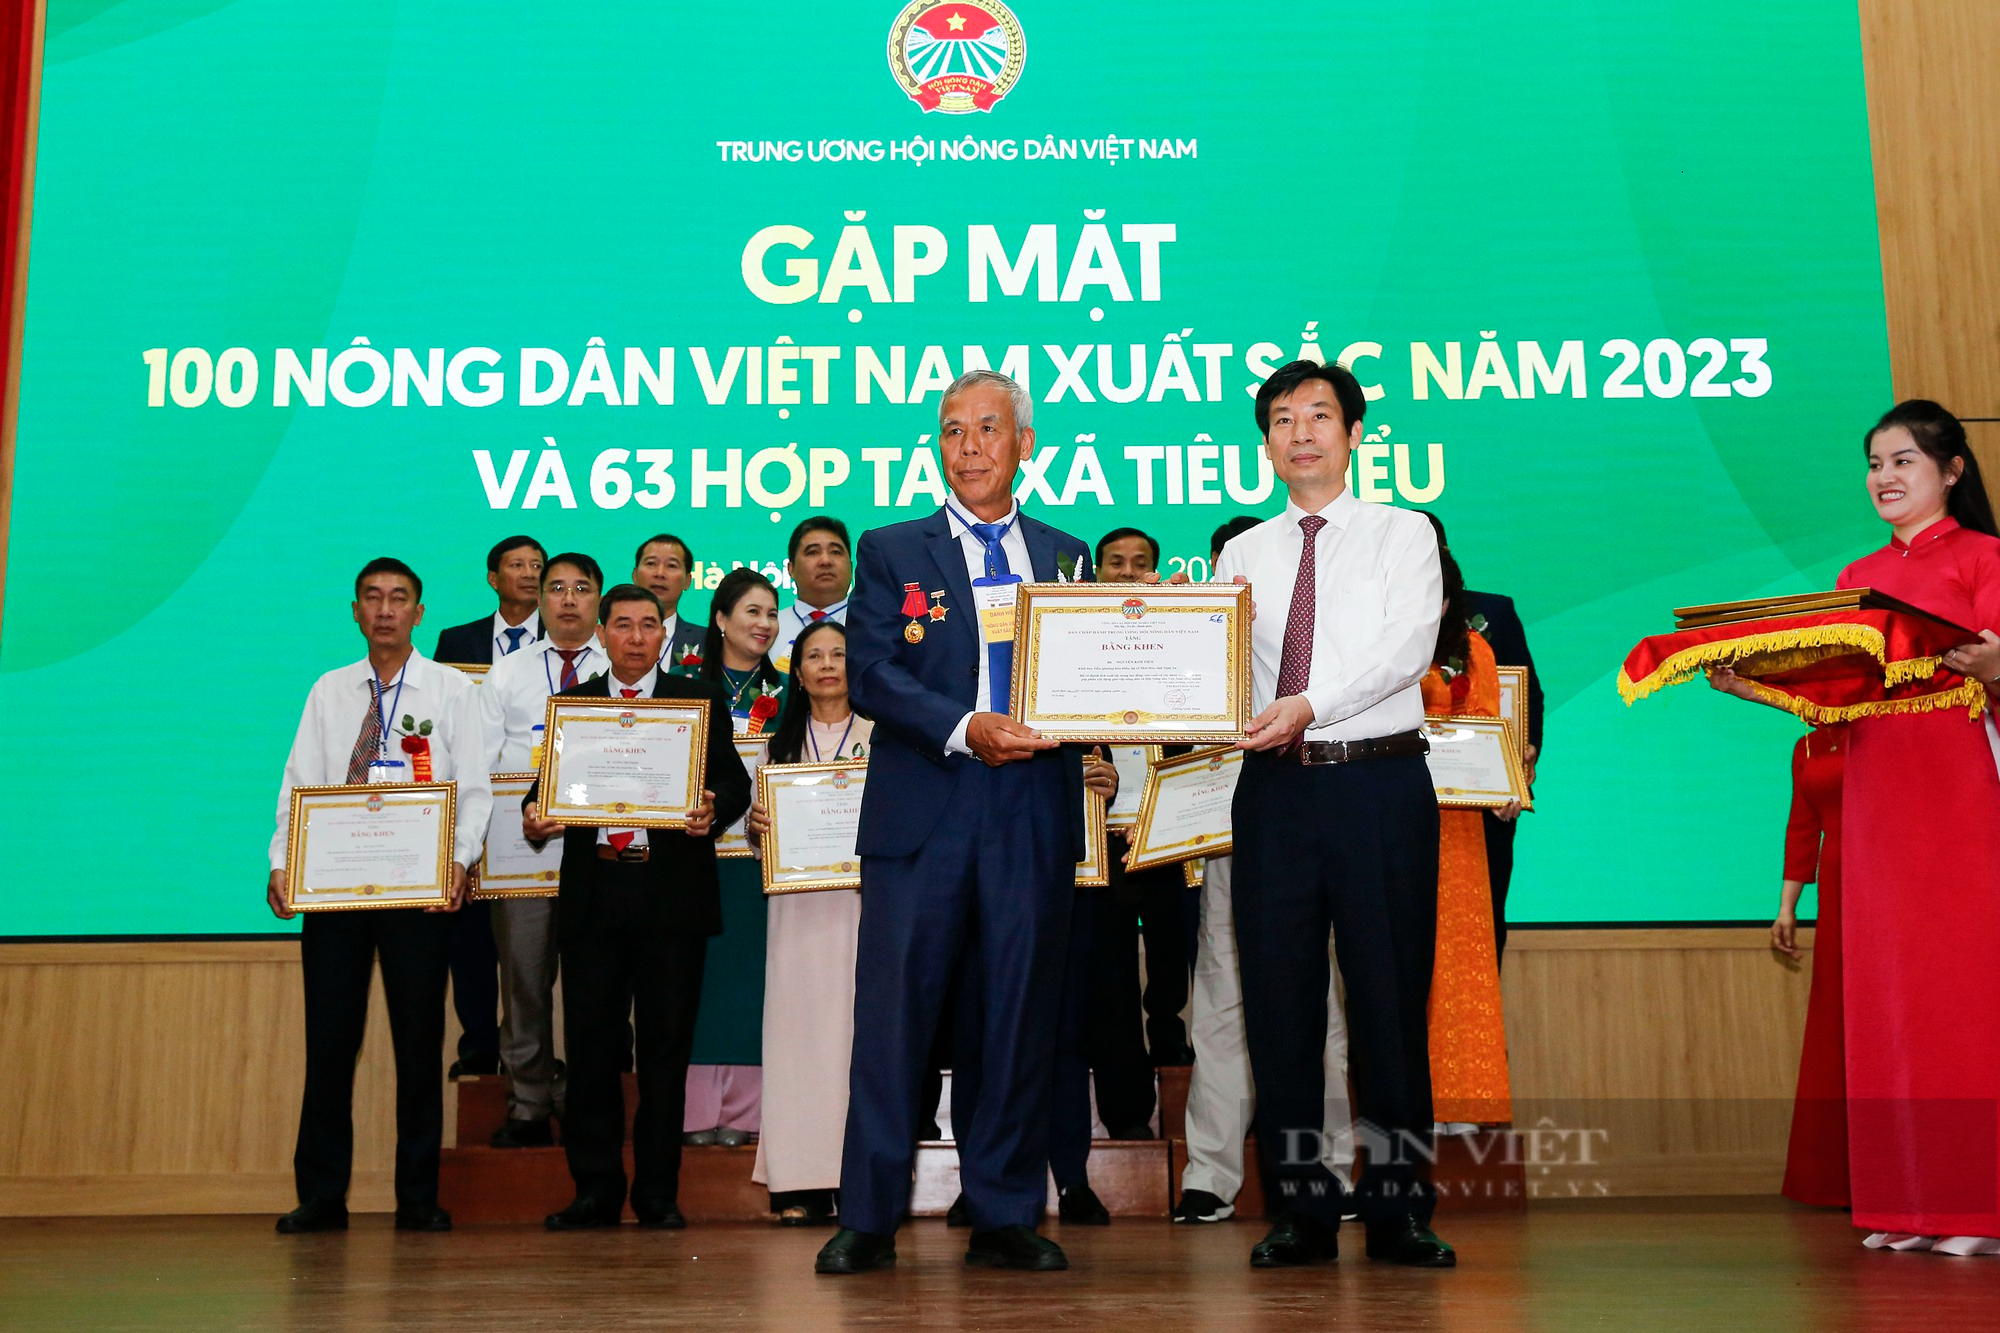 Hình ảnh 163 NDVNXS và HTX tiêu biểu 2023 nhận bằng khen từ Trung ương Hội nông dân Việt Nam - Ảnh 10.